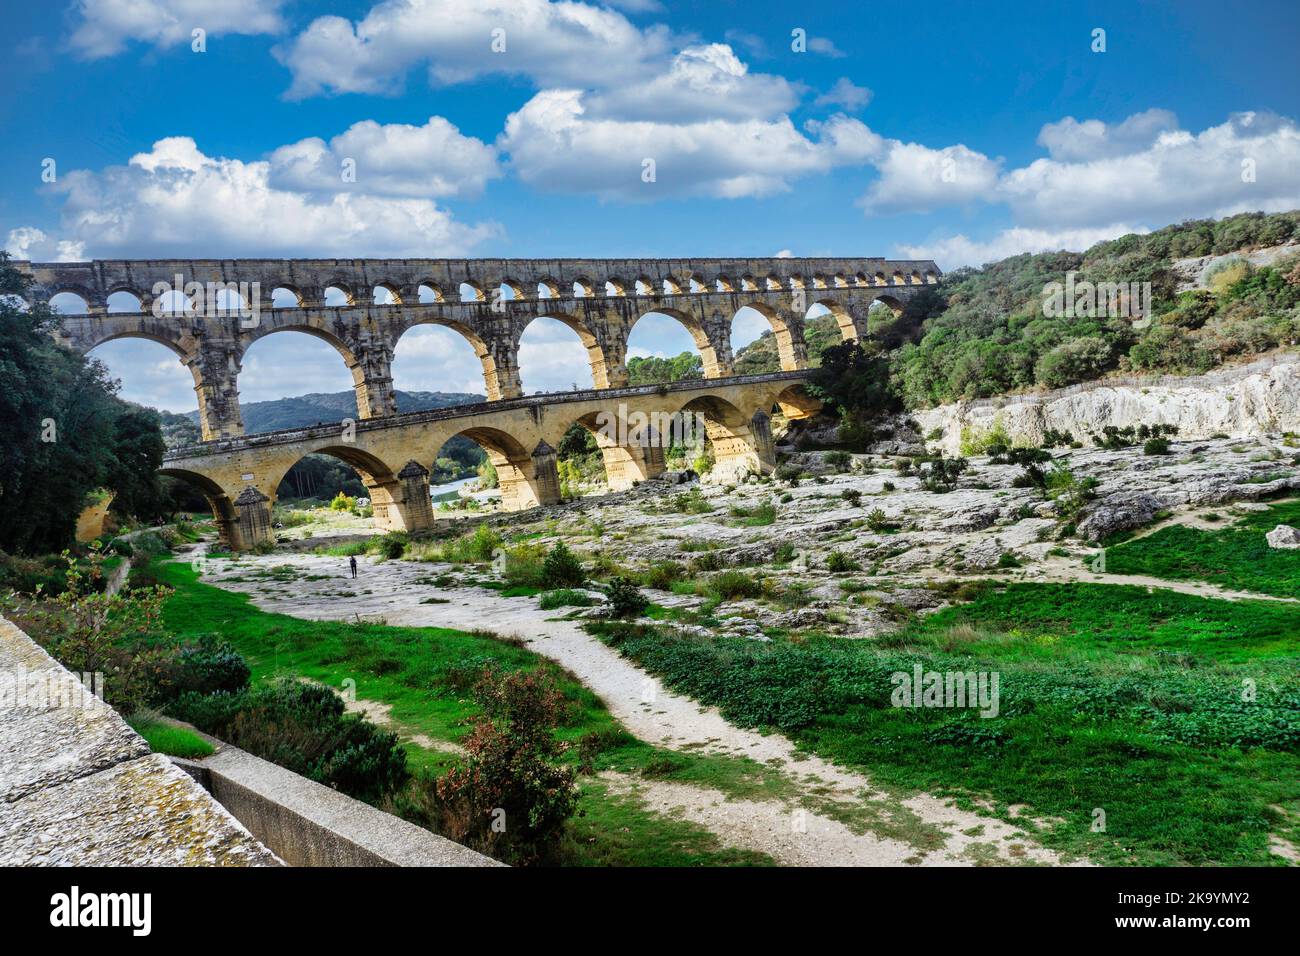 Das römische Aquädukt in Pont Du Gard, Frankreich. Erbaut im 1. Jahrhundert n. Chr. Als UNESCO-Weltkulturerbe. Stockfoto